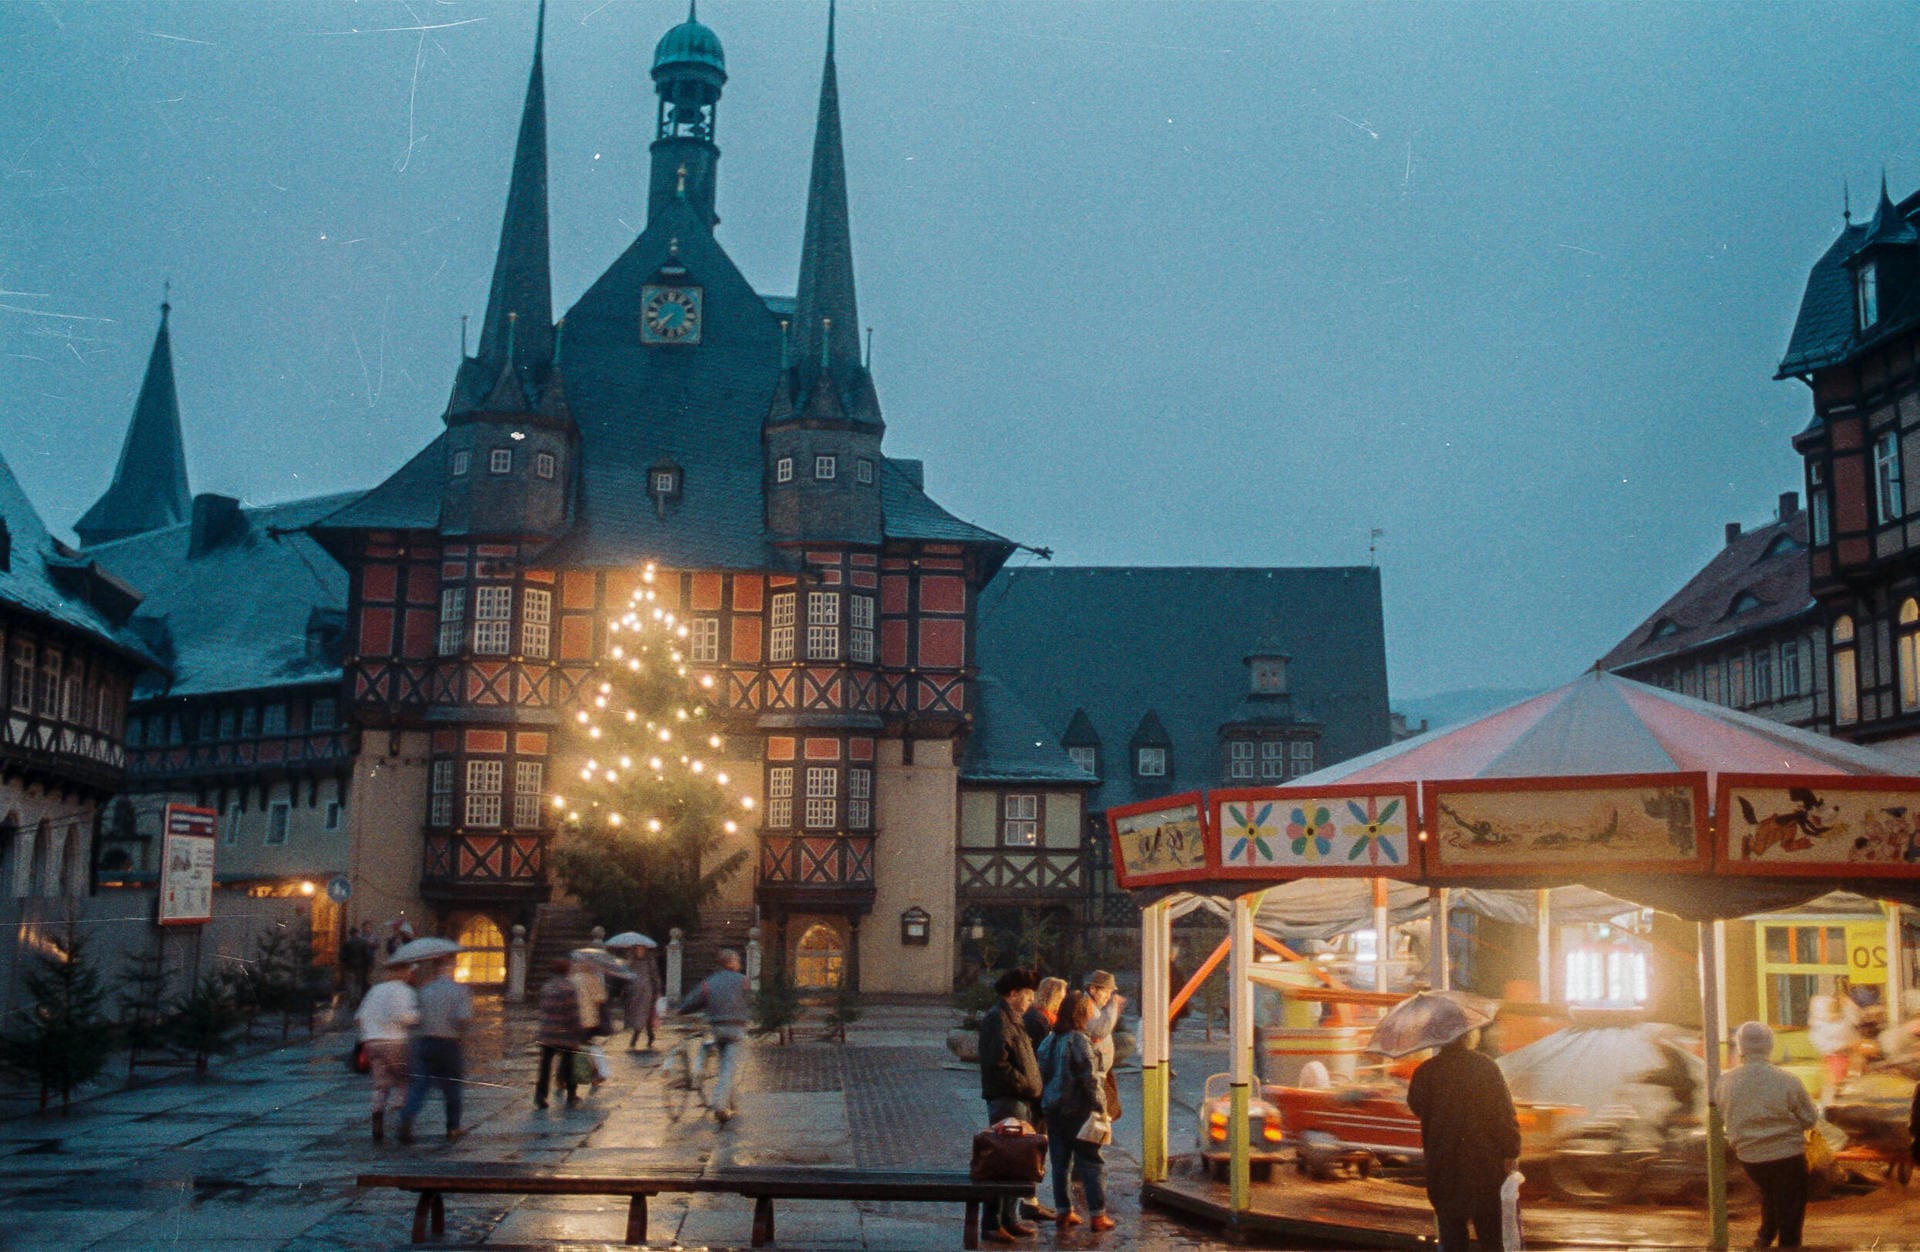 Weihnachtsmarkt in Wernigerode